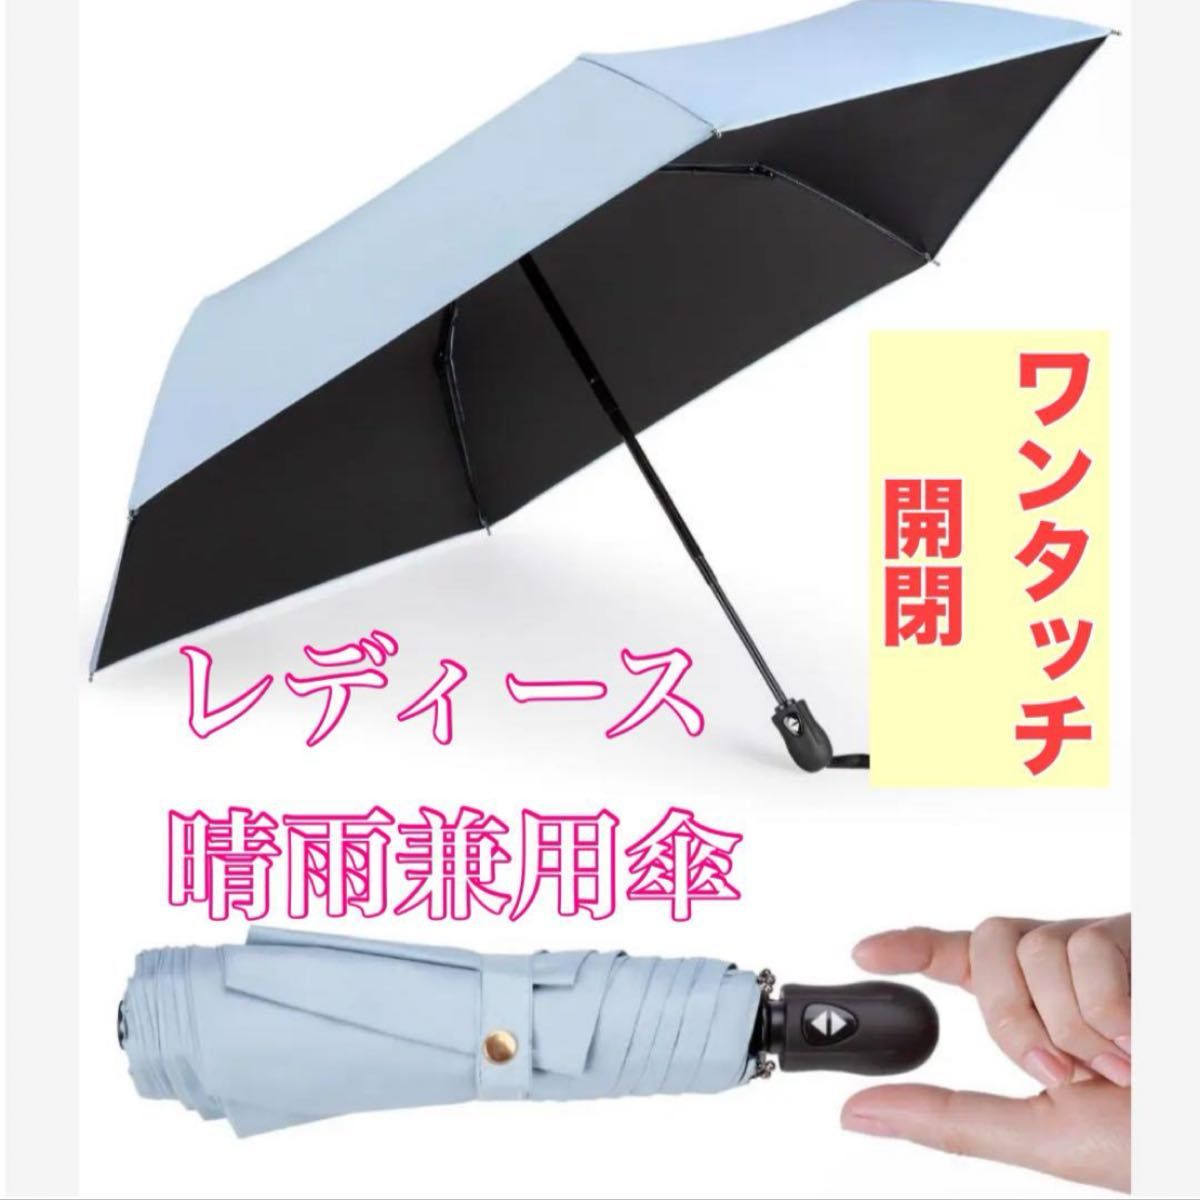 レディース 日傘 晴雨兼用傘 超軽量 コンパクト 遮熱 遮光 ワンタッチ開閉 ブルー 水色  折り畳み傘 自動開閉 晴雨兼用